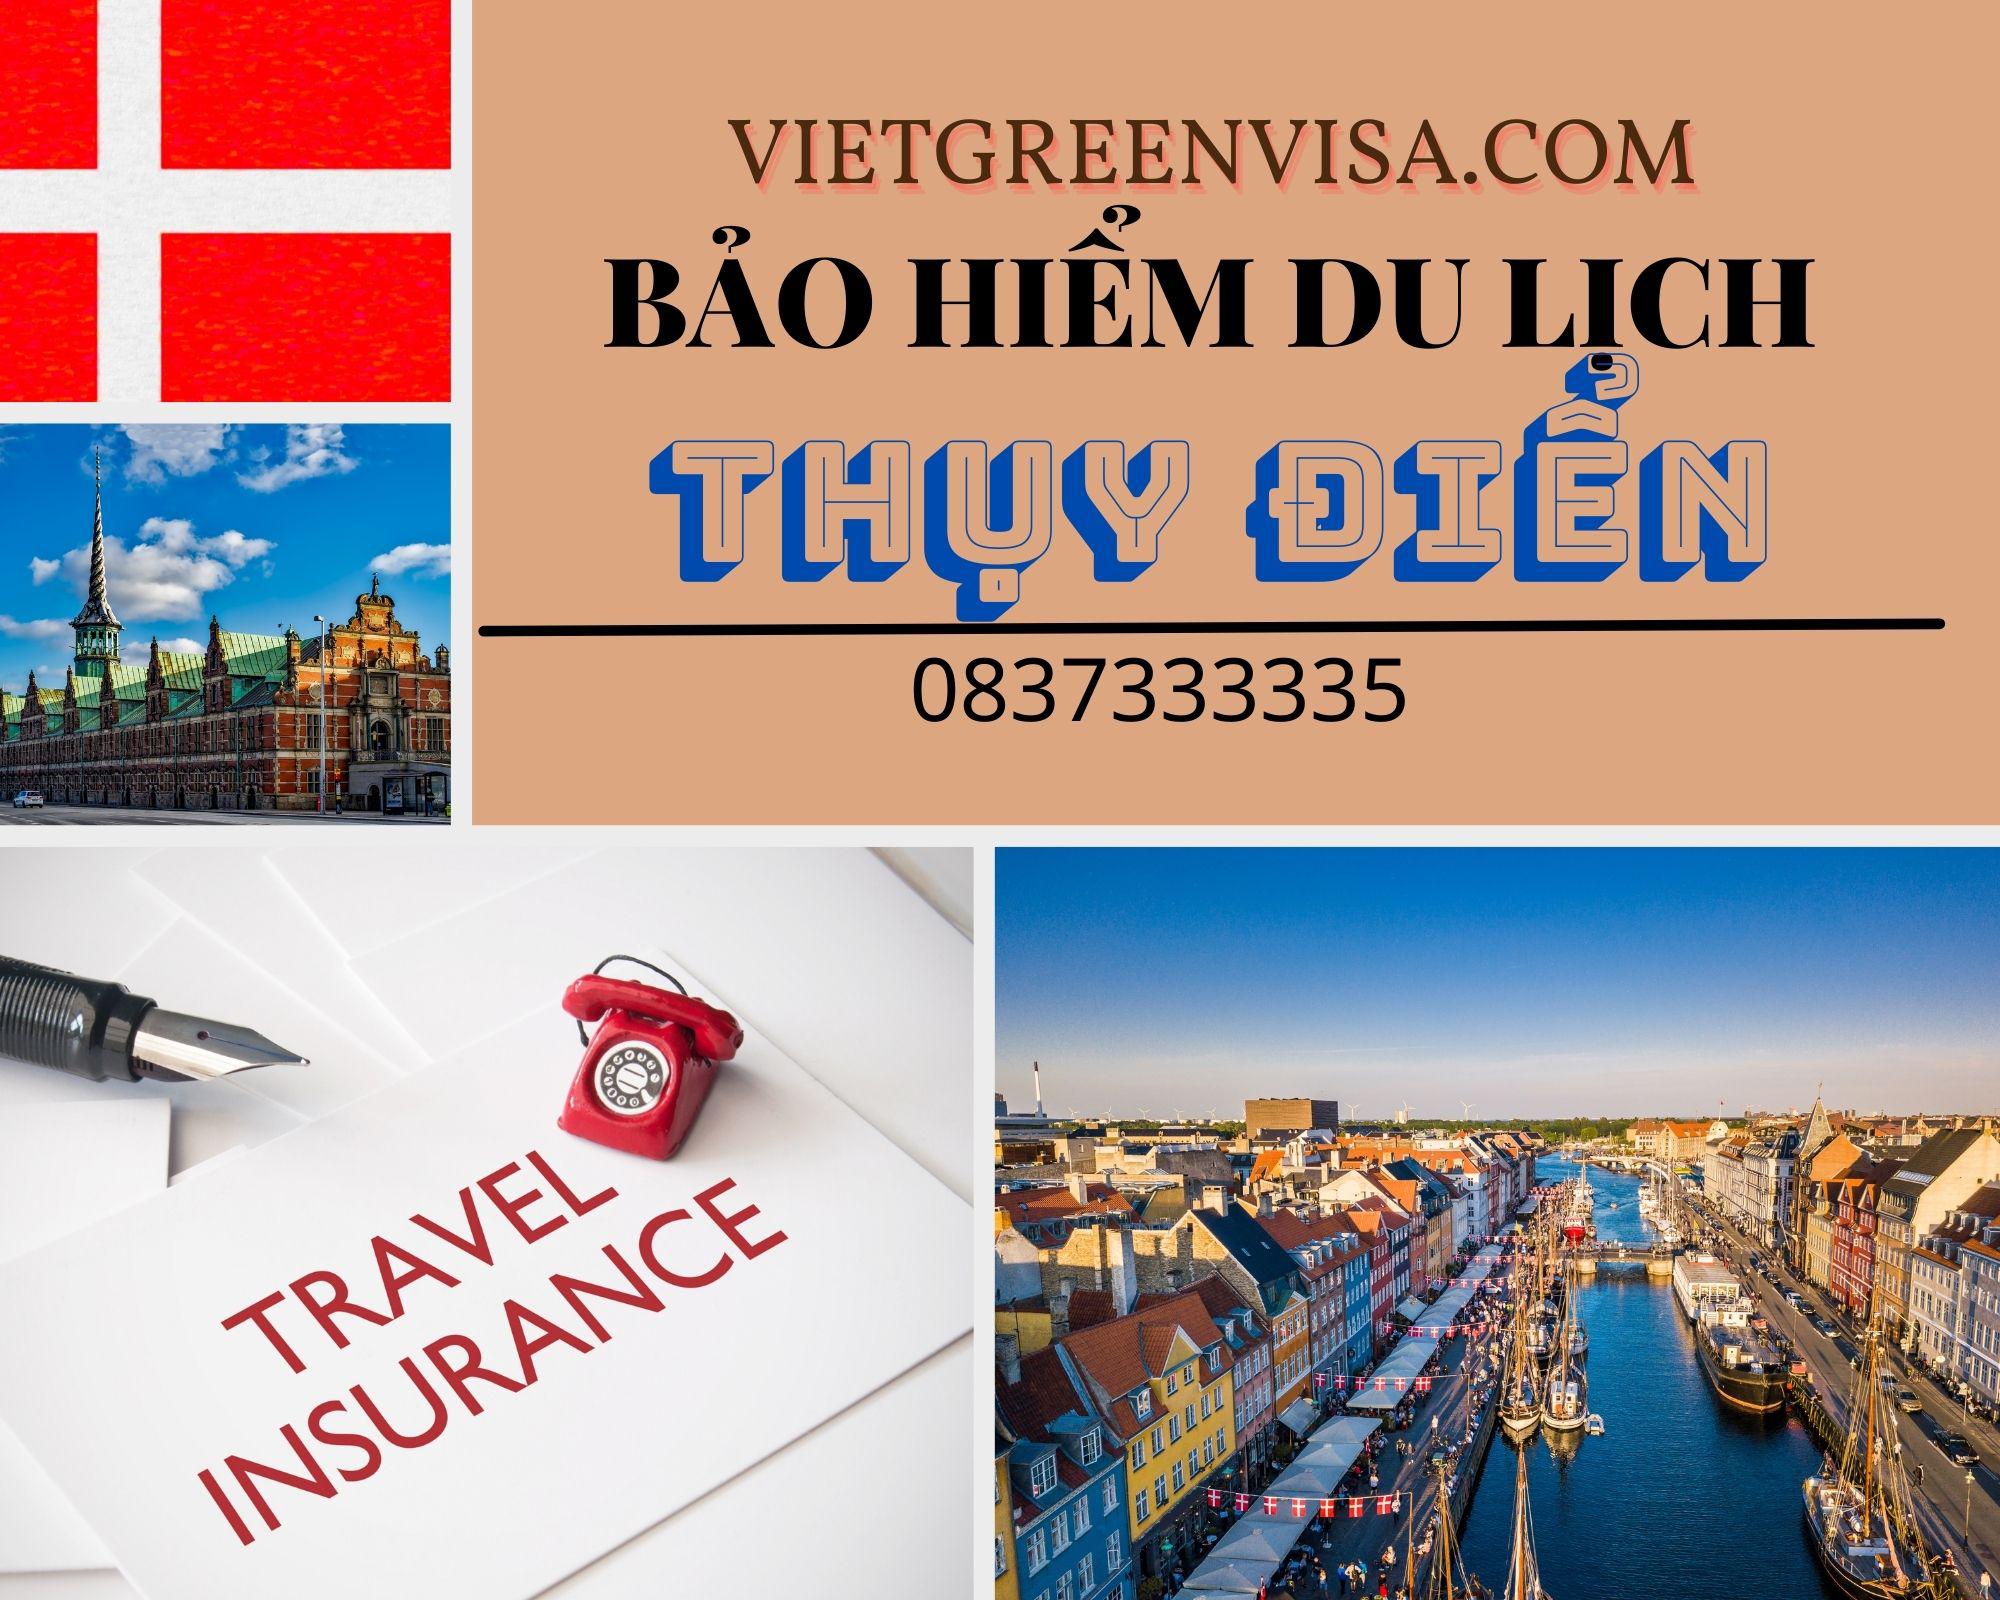 Dịch vụ bảo hiểm du lịch xin visa Thụy Điển giá rẻ